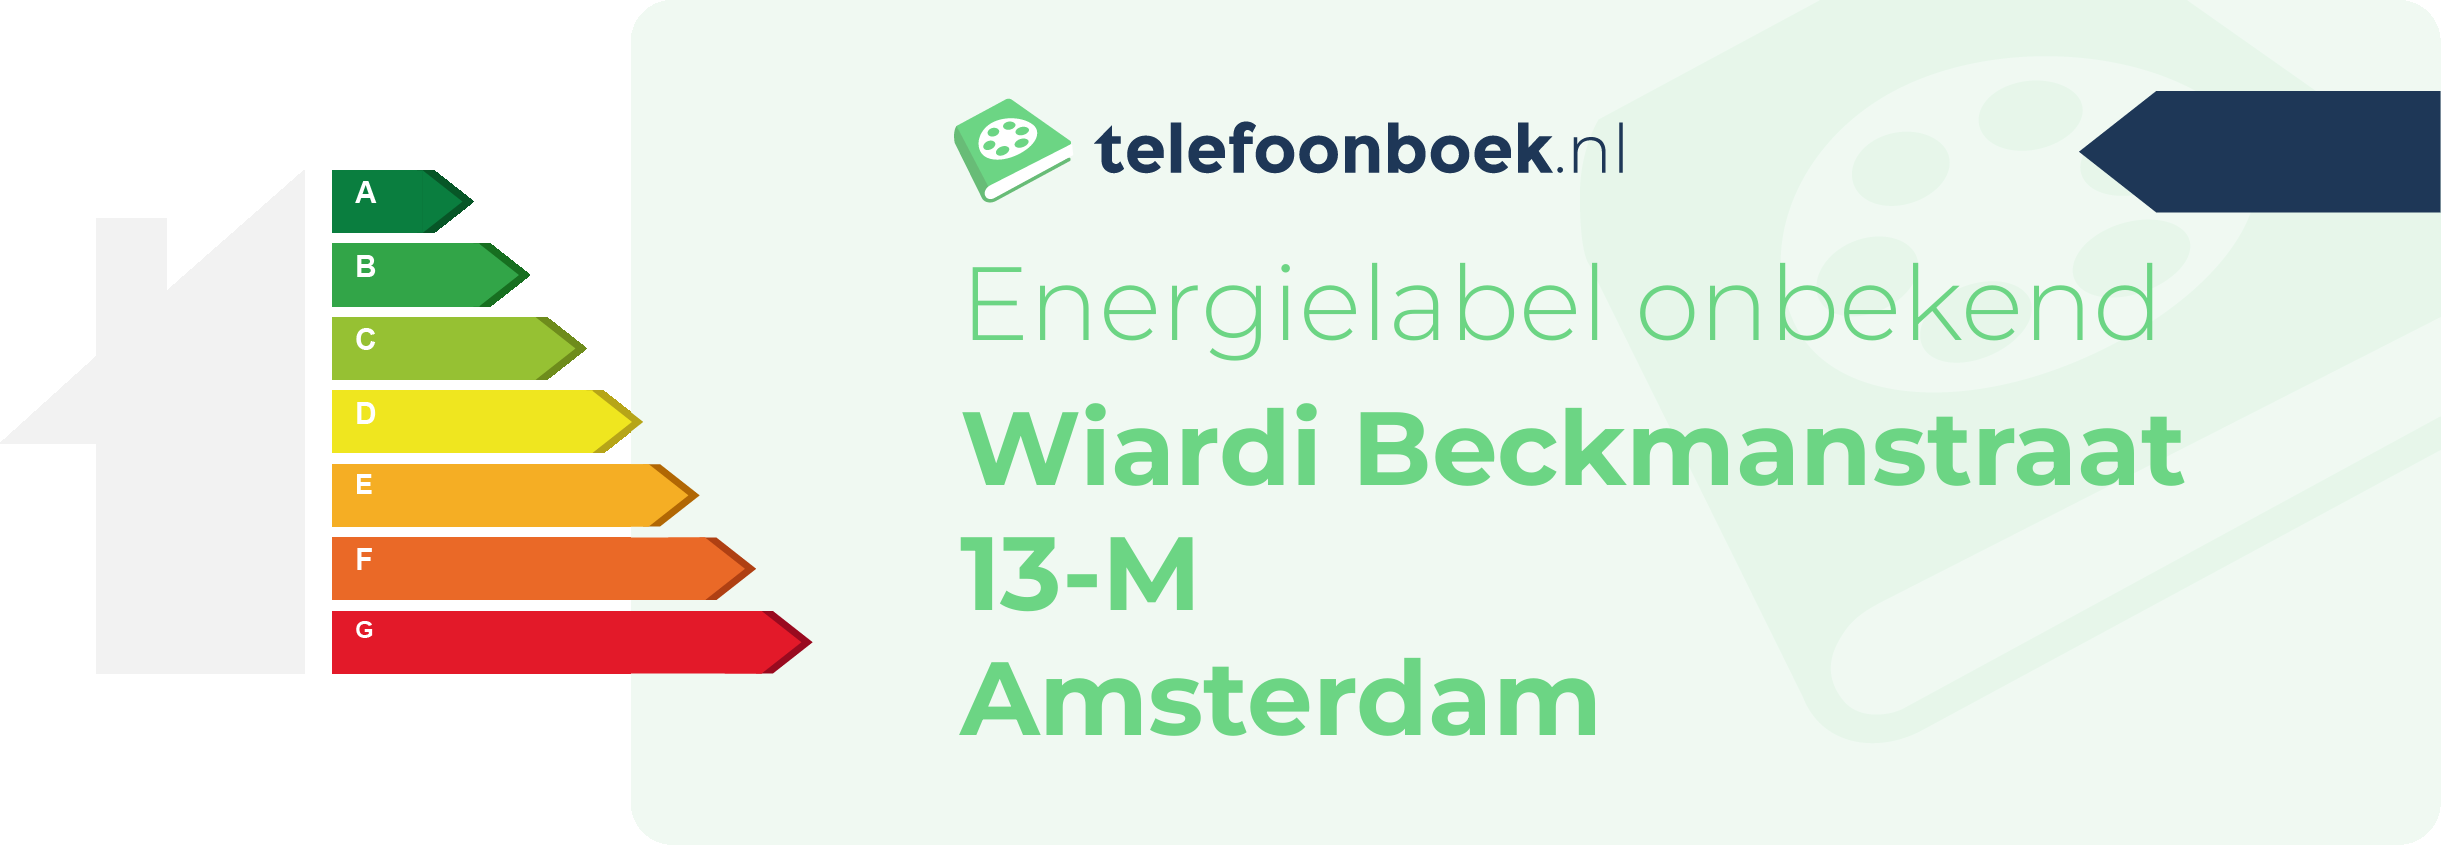 Energielabel Wiardi Beckmanstraat 13-M Amsterdam